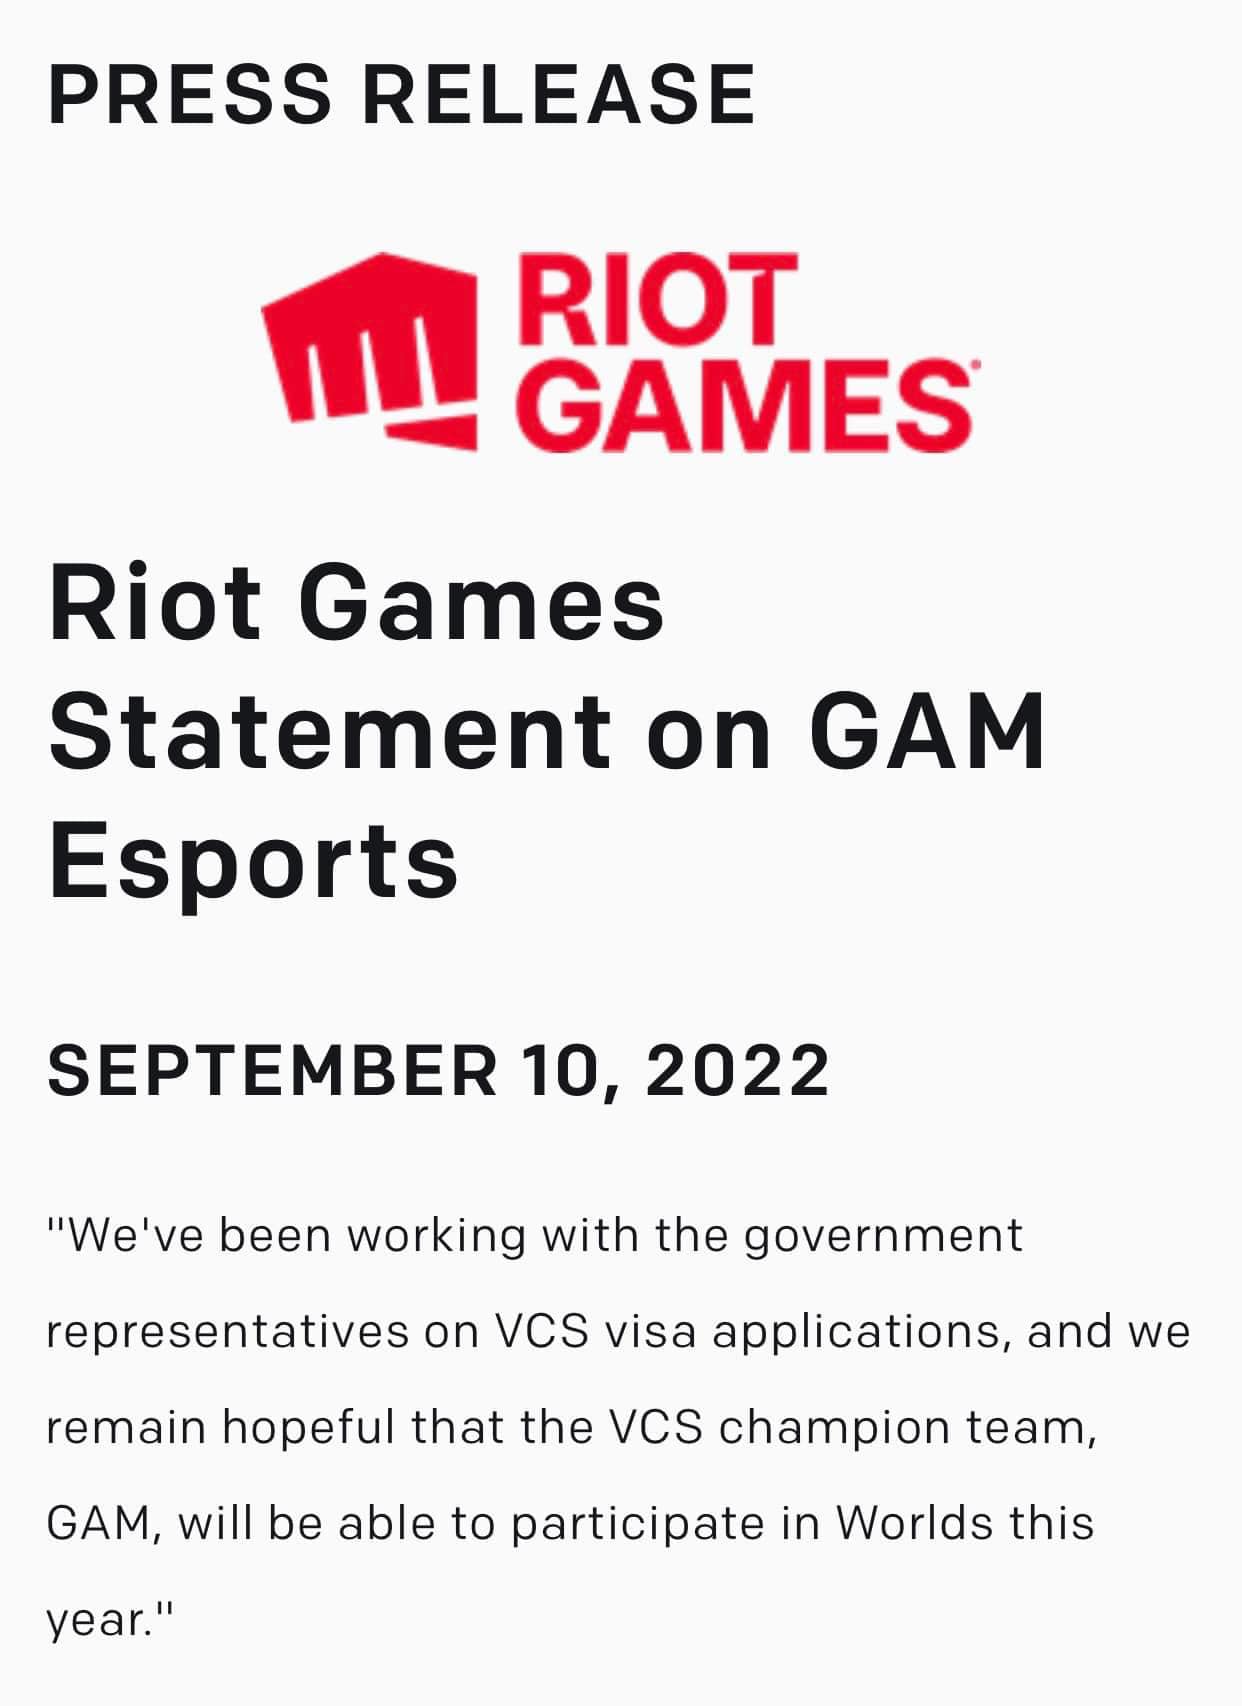 Riot Games đang nỗ lực để đưa VCS đến với CKTG 2022